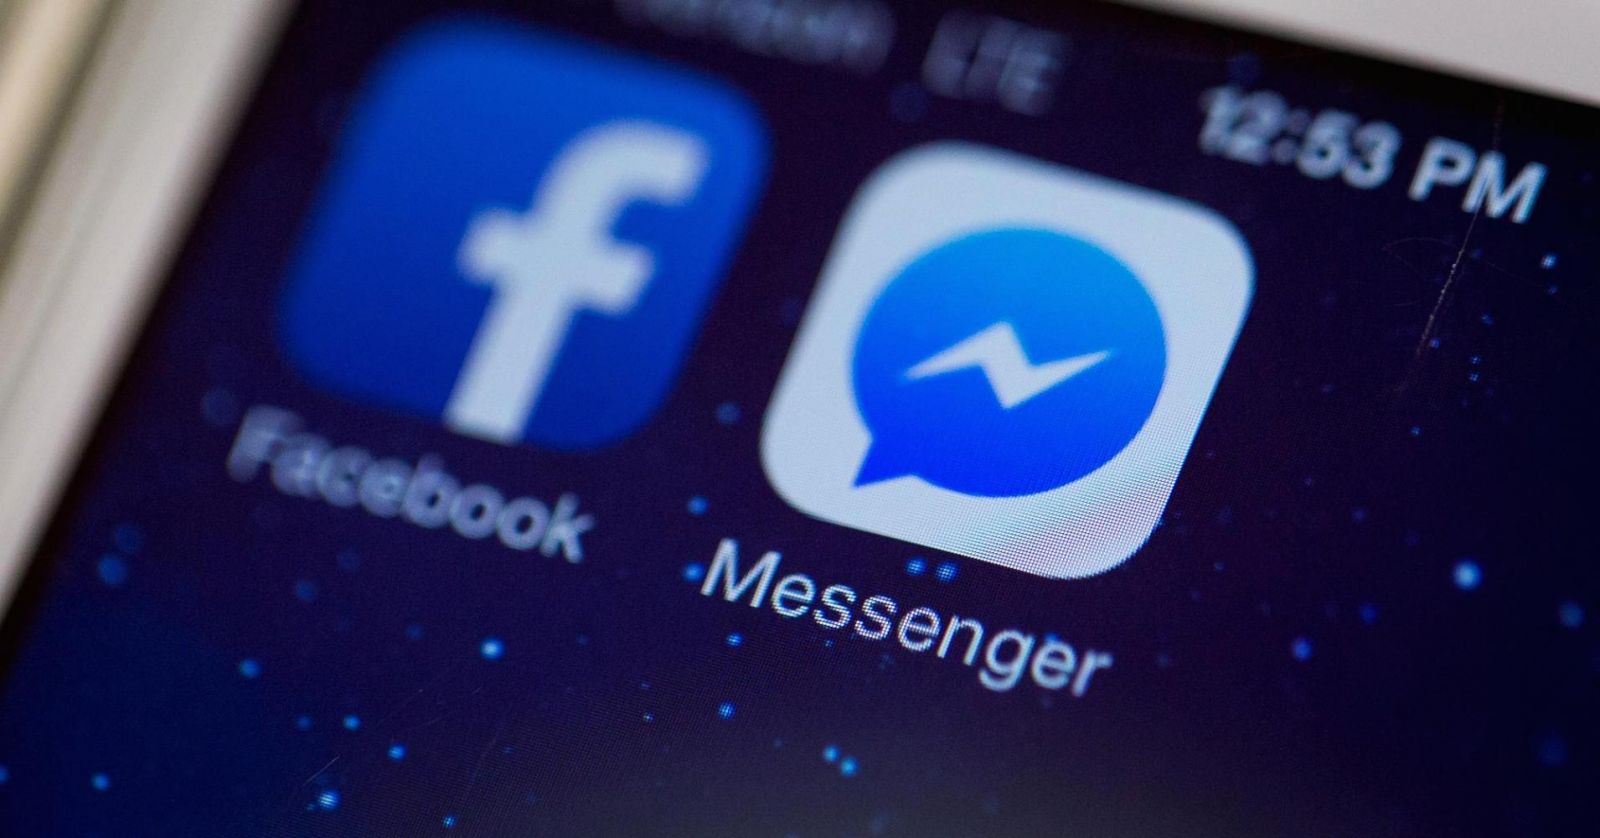 Chúc mừng Facebook Messenger cán mốc 1 tỉ người dùng!